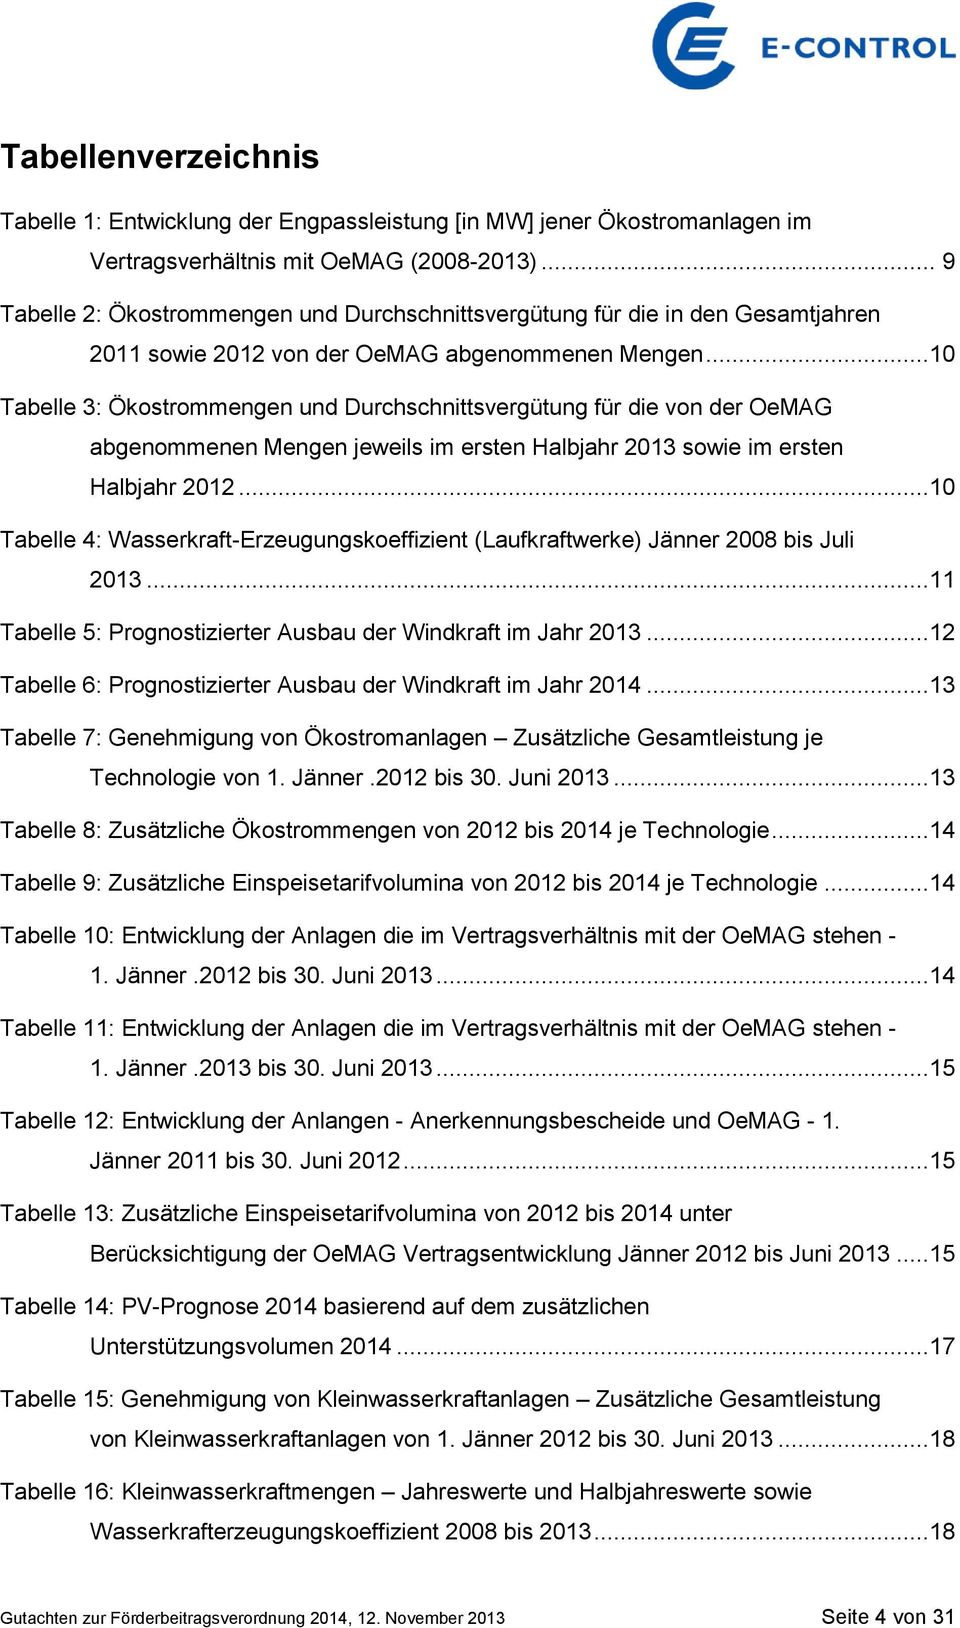 ..10 Tabelle 3: Ökostrommengen und Durchschnittsvergütung für die von der OeMAG abgenommenen Mengen jeweils im ersten Halbjahr 2013 sowie im ersten Halbjahr 2012.